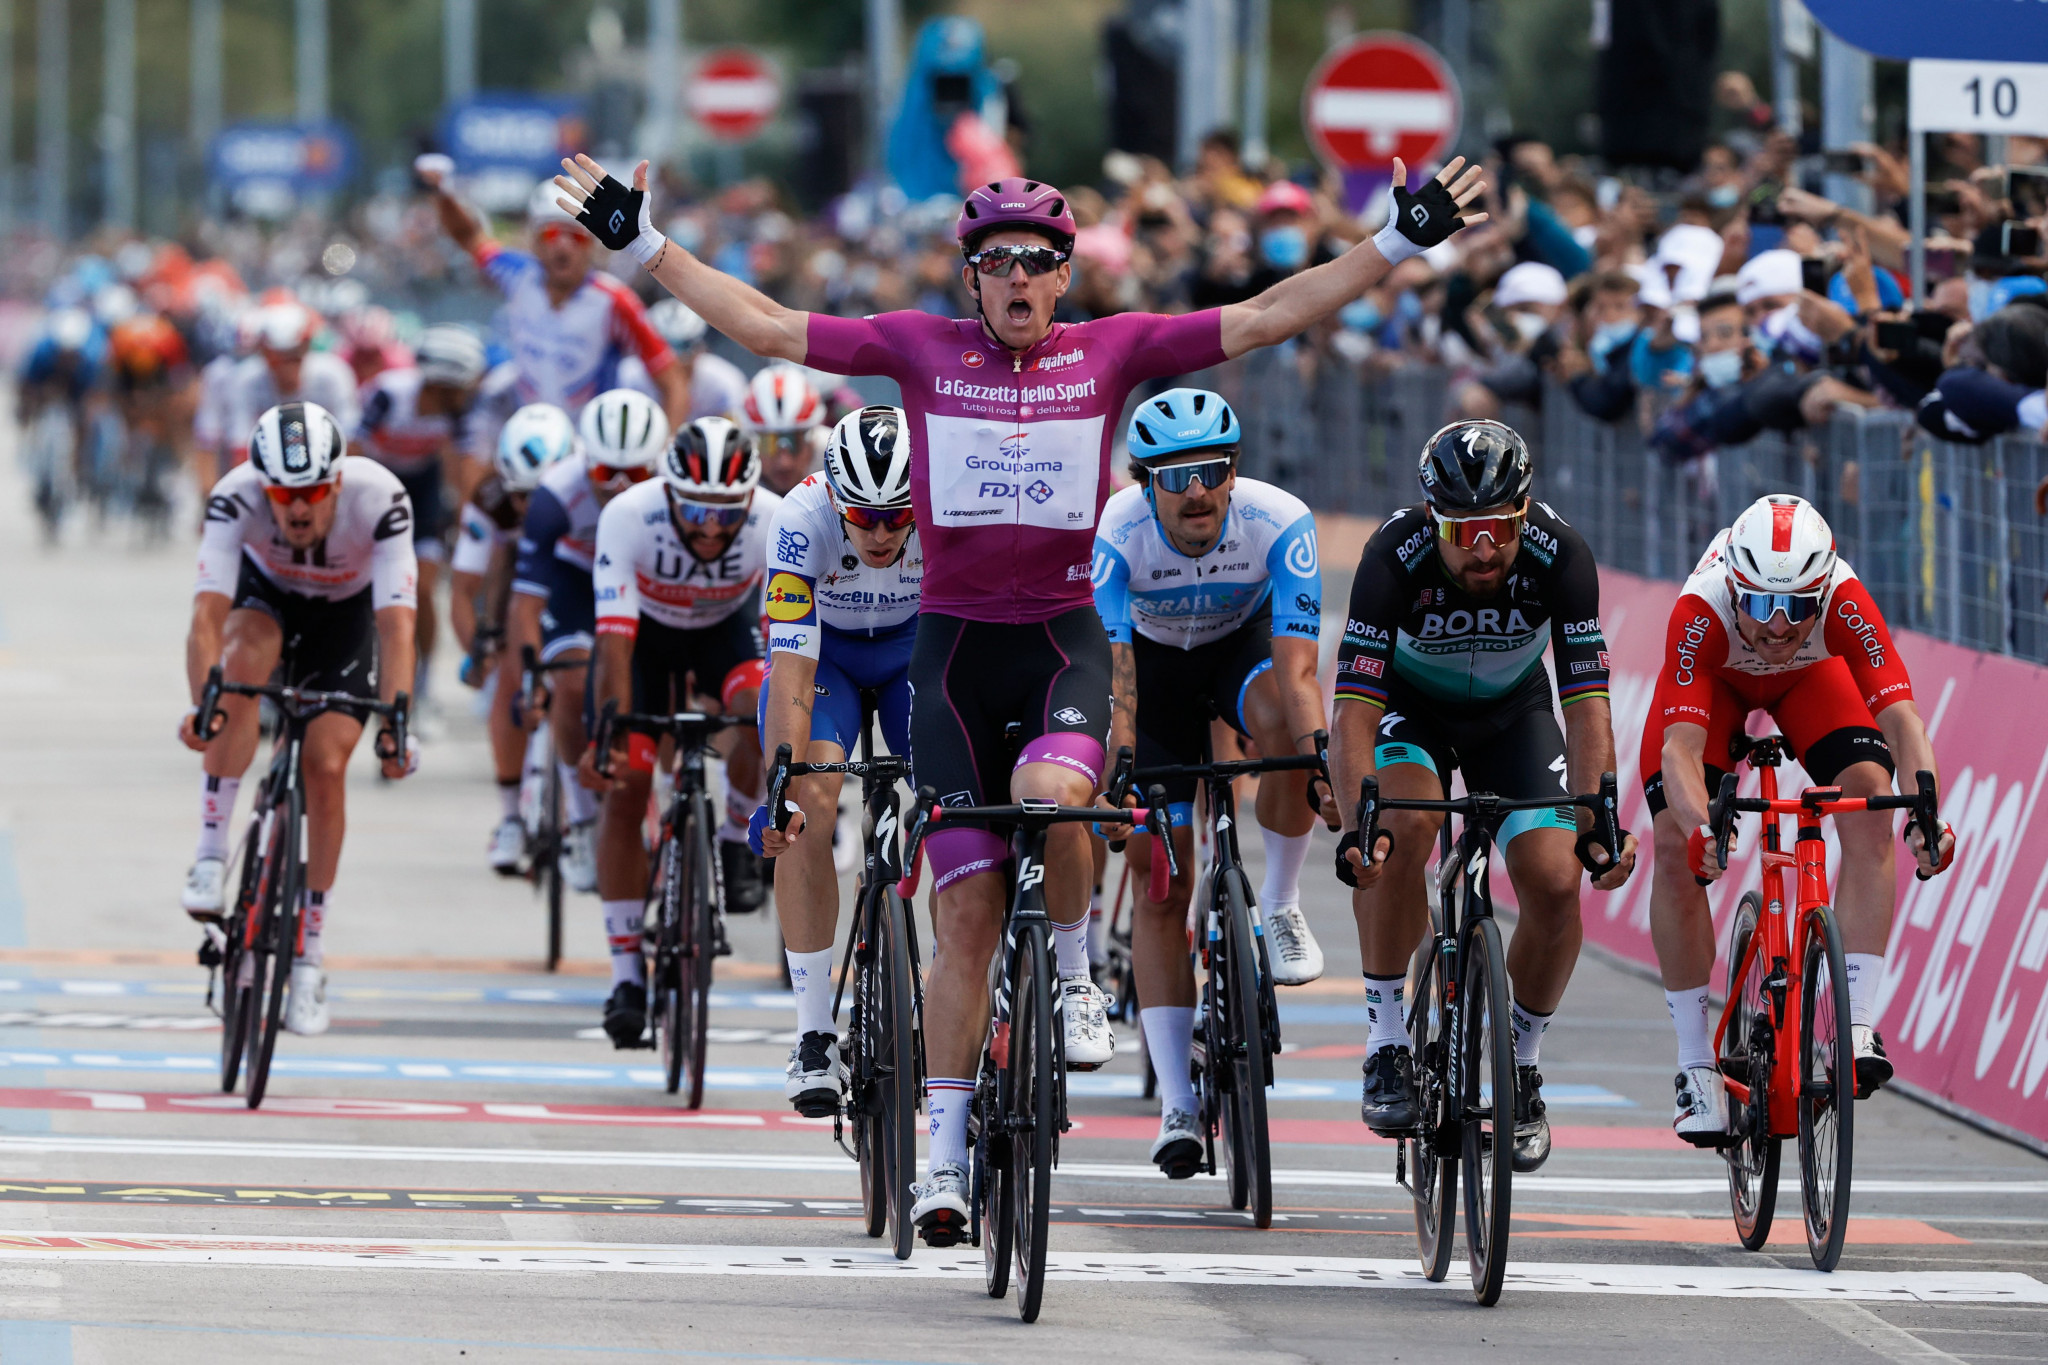 Démare clinches fourth Giro d'Italia stage victory in Rimini